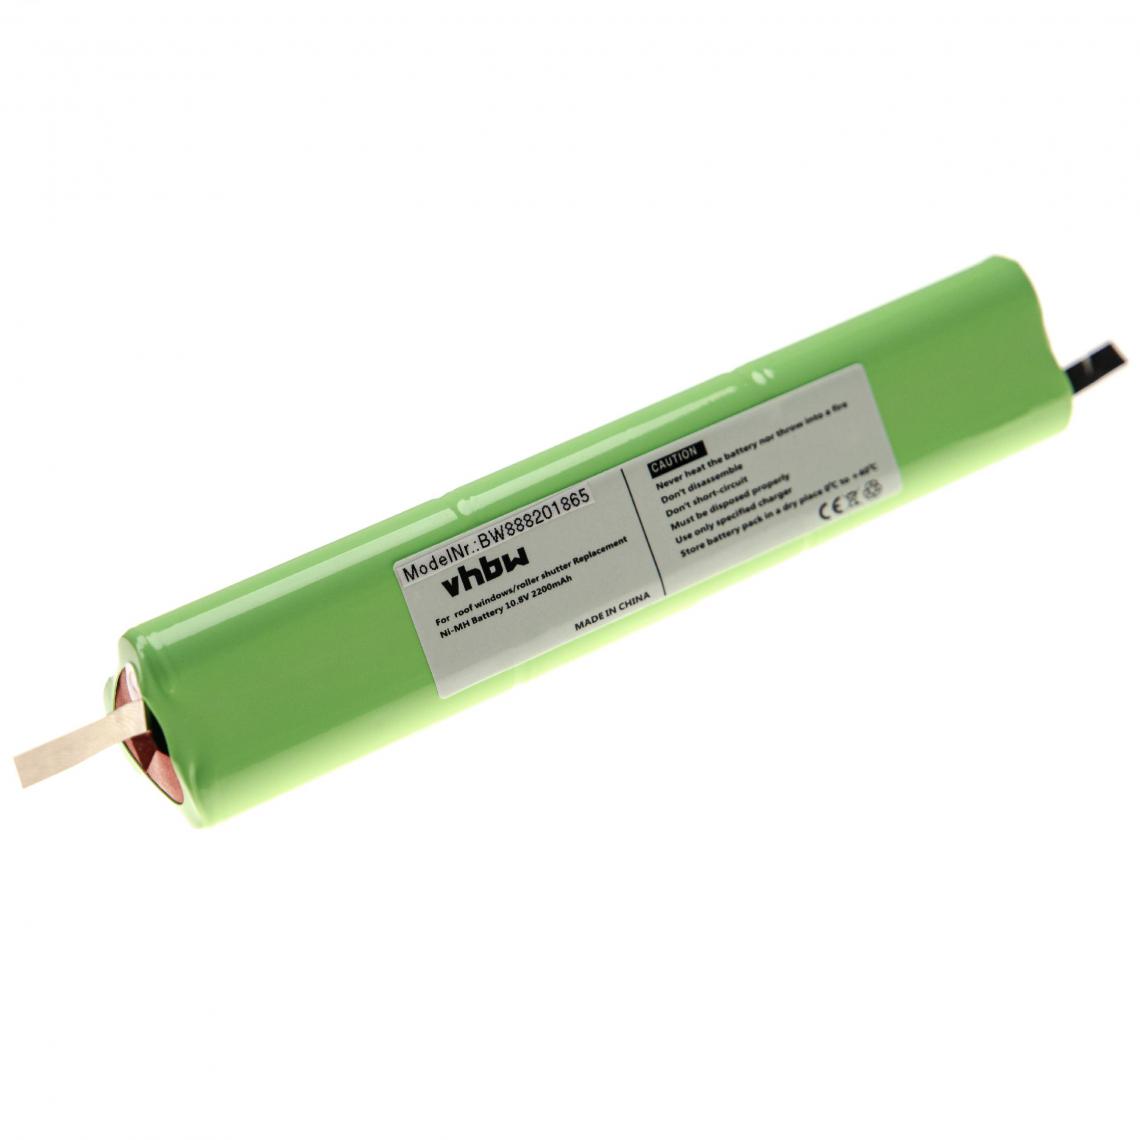 Vhbw - vhbw Batterie remplacement pour Velux 946933 pour volet roulant de fenêtre (2200mAh, 10,8V, NiMH) - Autre appareil de mesure